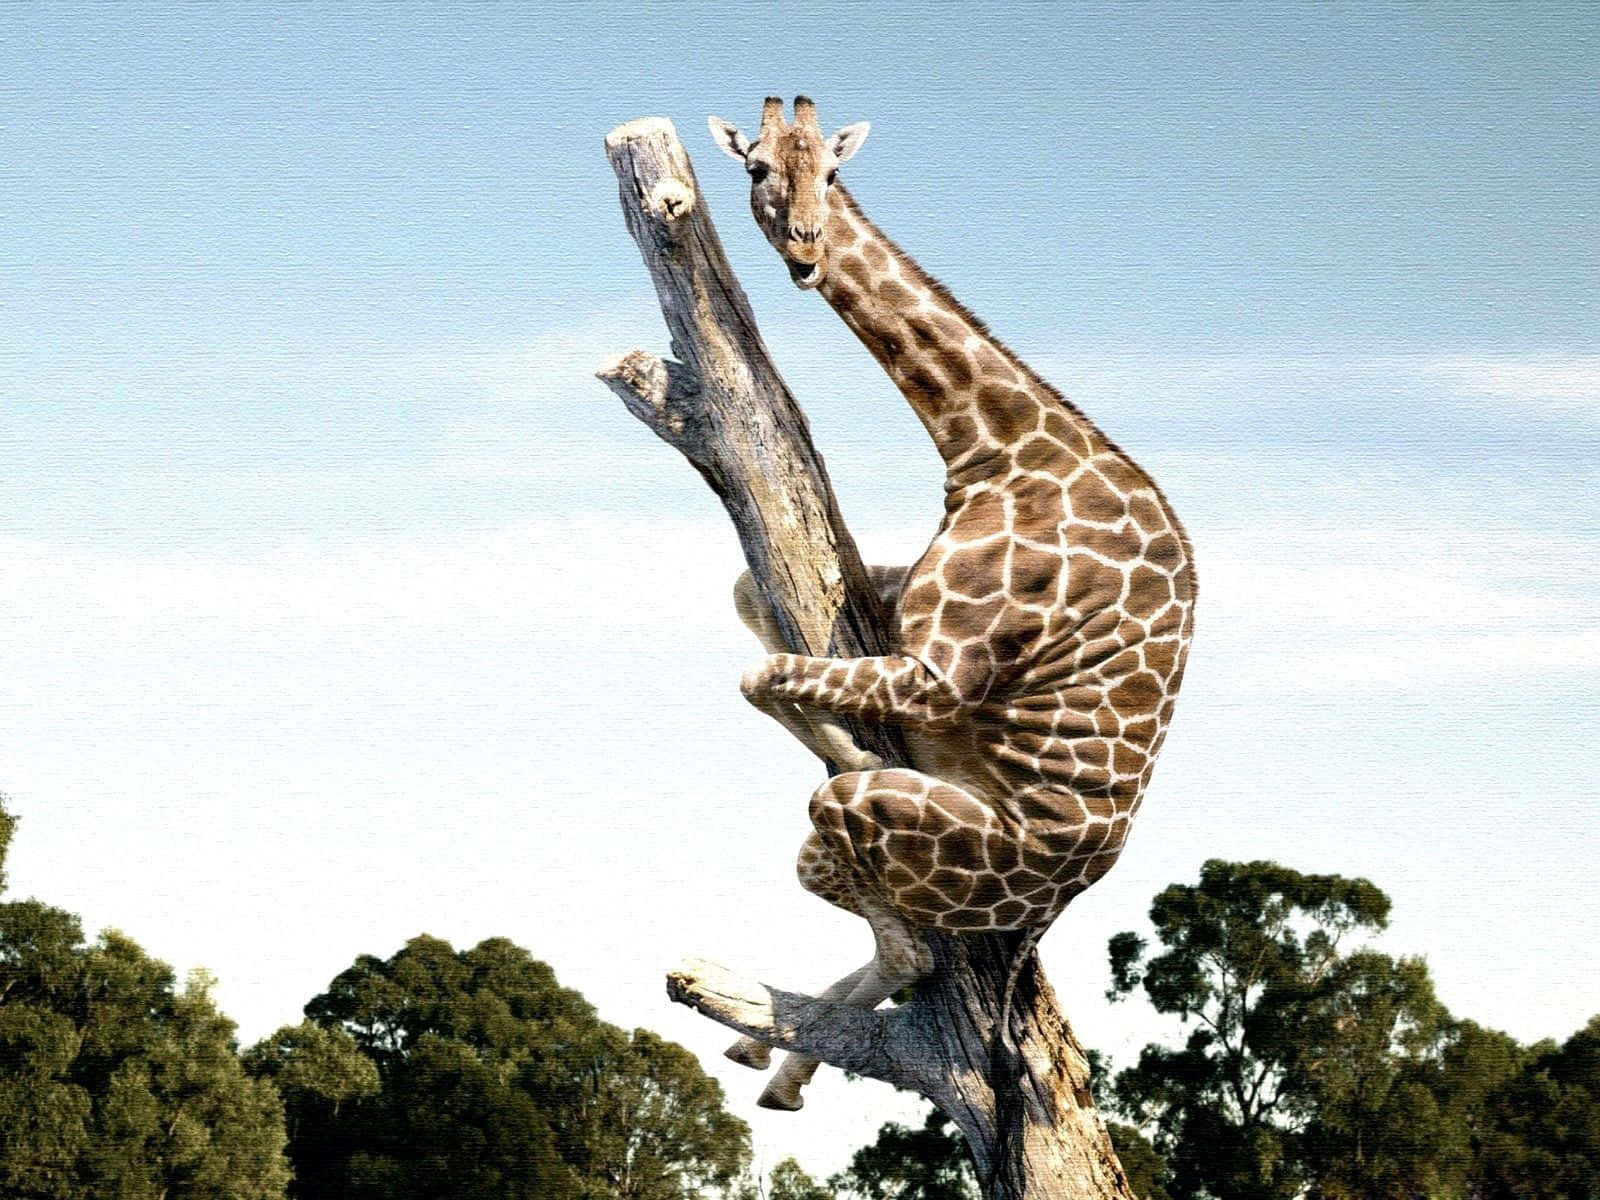 Skaffadig Ett Gott Skratt Med Denna Roliga Giraff! Wallpaper